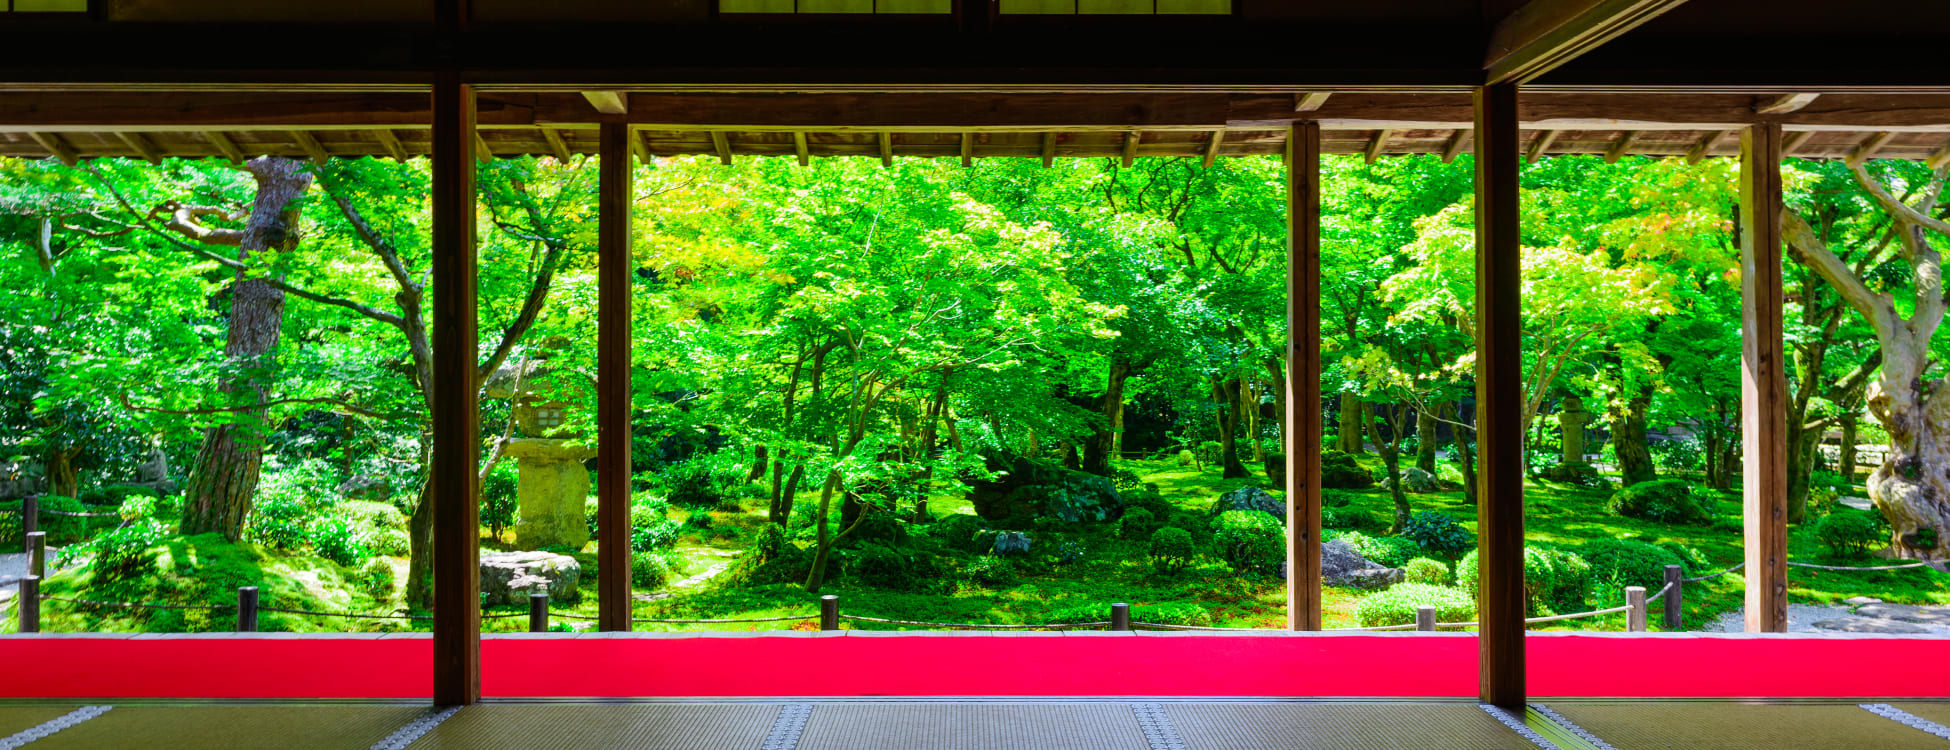 Дзэн-буддизм и медитация в Японии